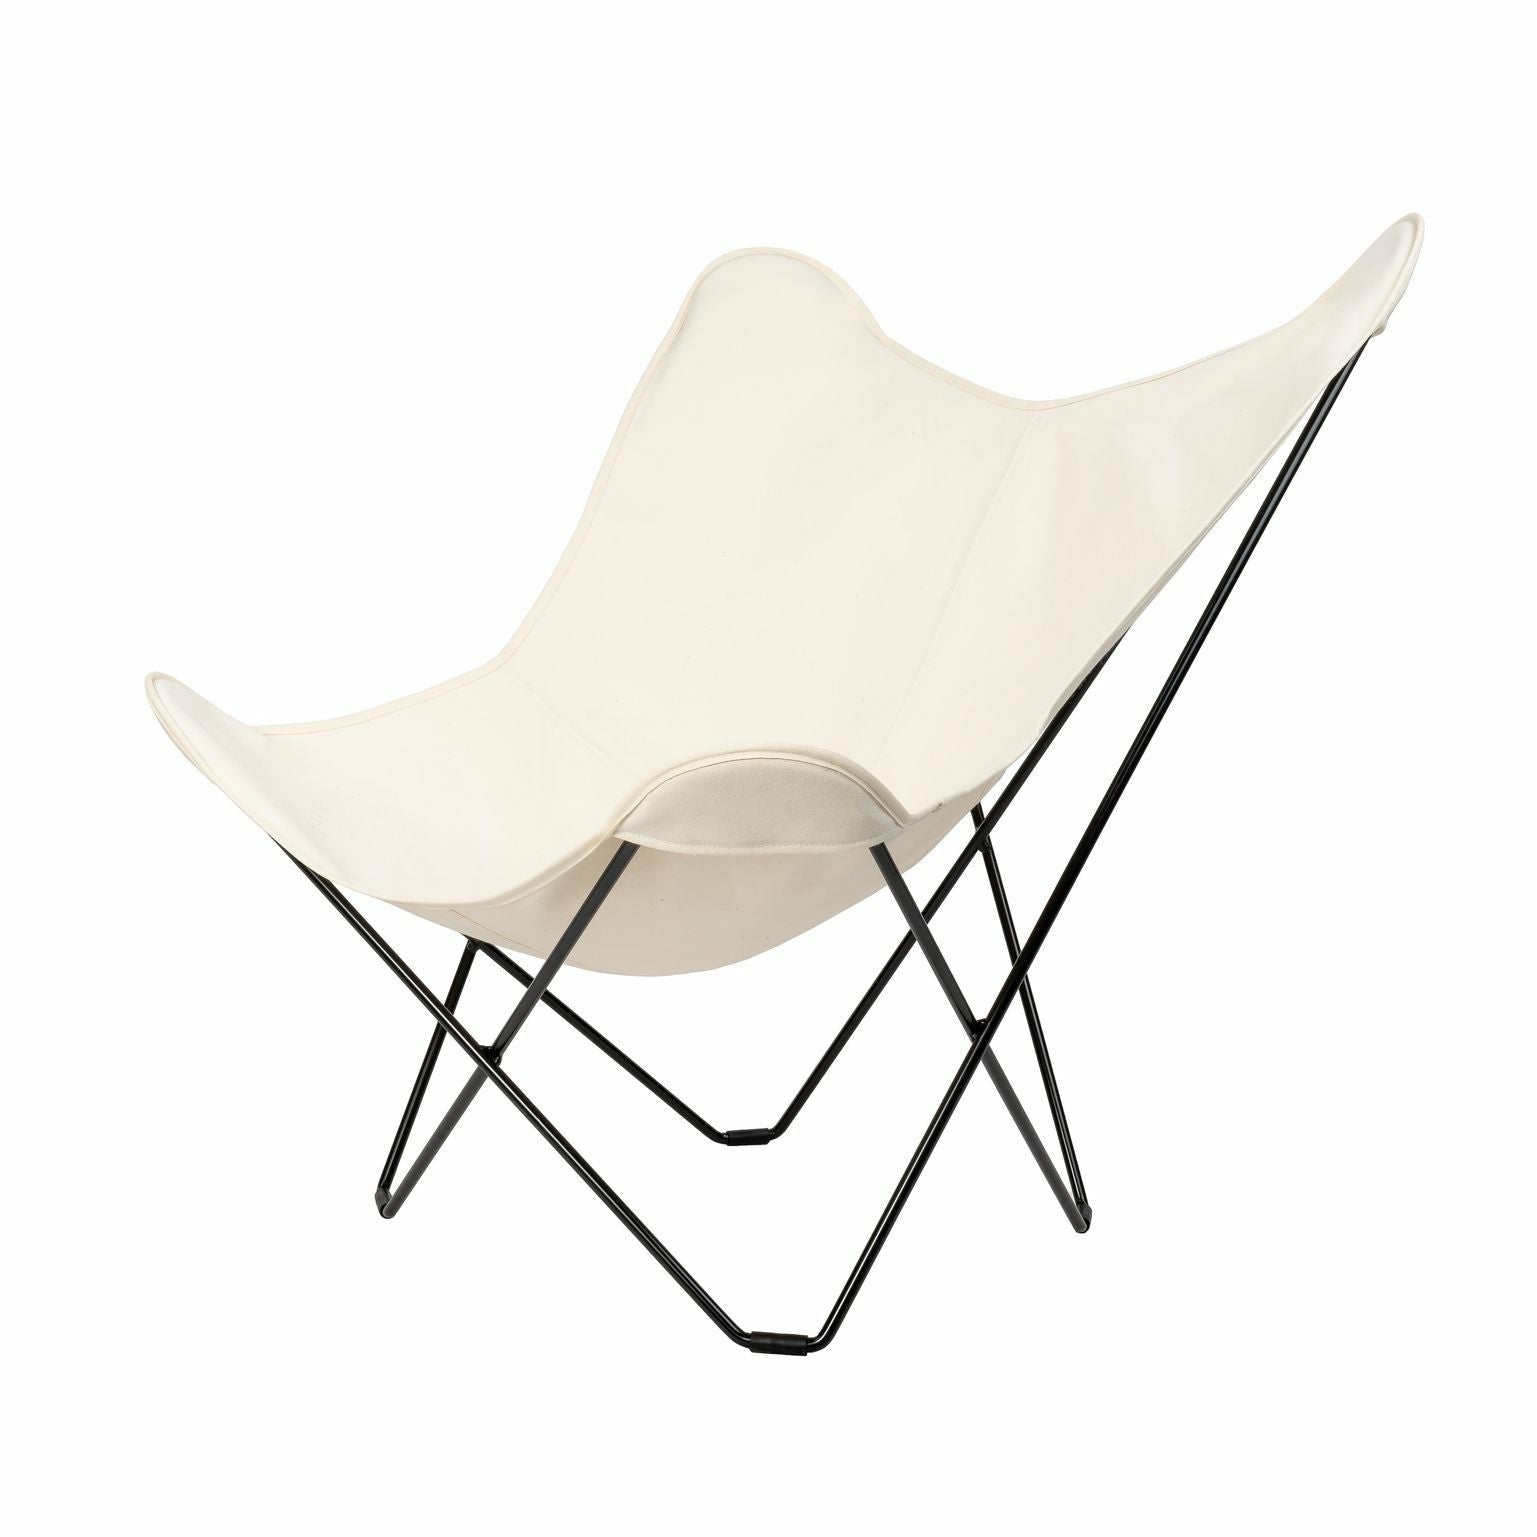 Cuero Cotton Canvas Mariposa Stuhl, Weiß mit schwarzem Rahmen